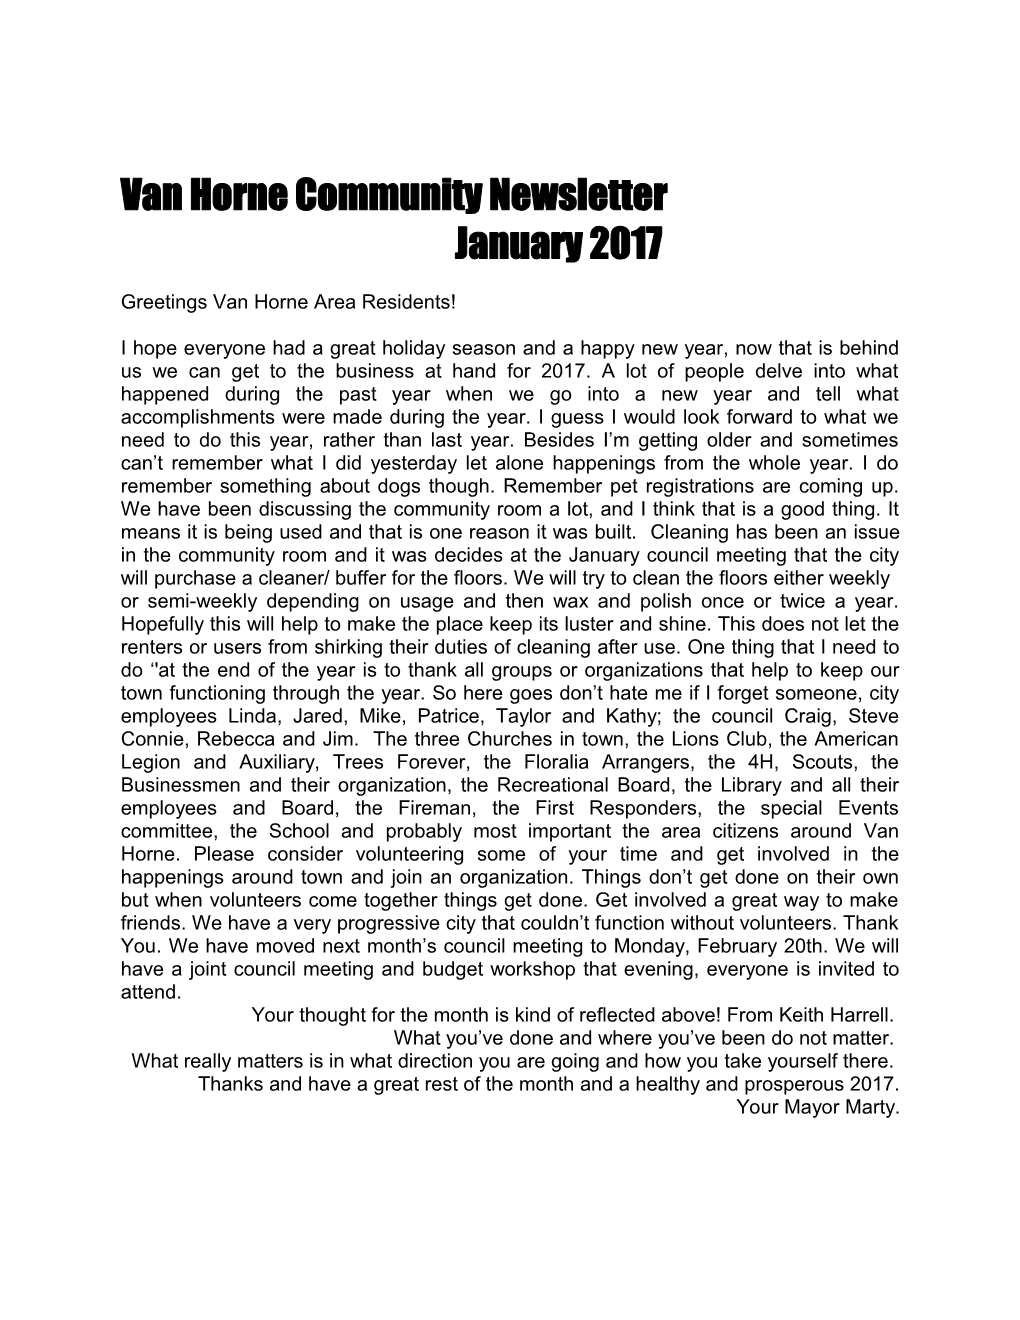 Van Horne Community Newsletter January 2004